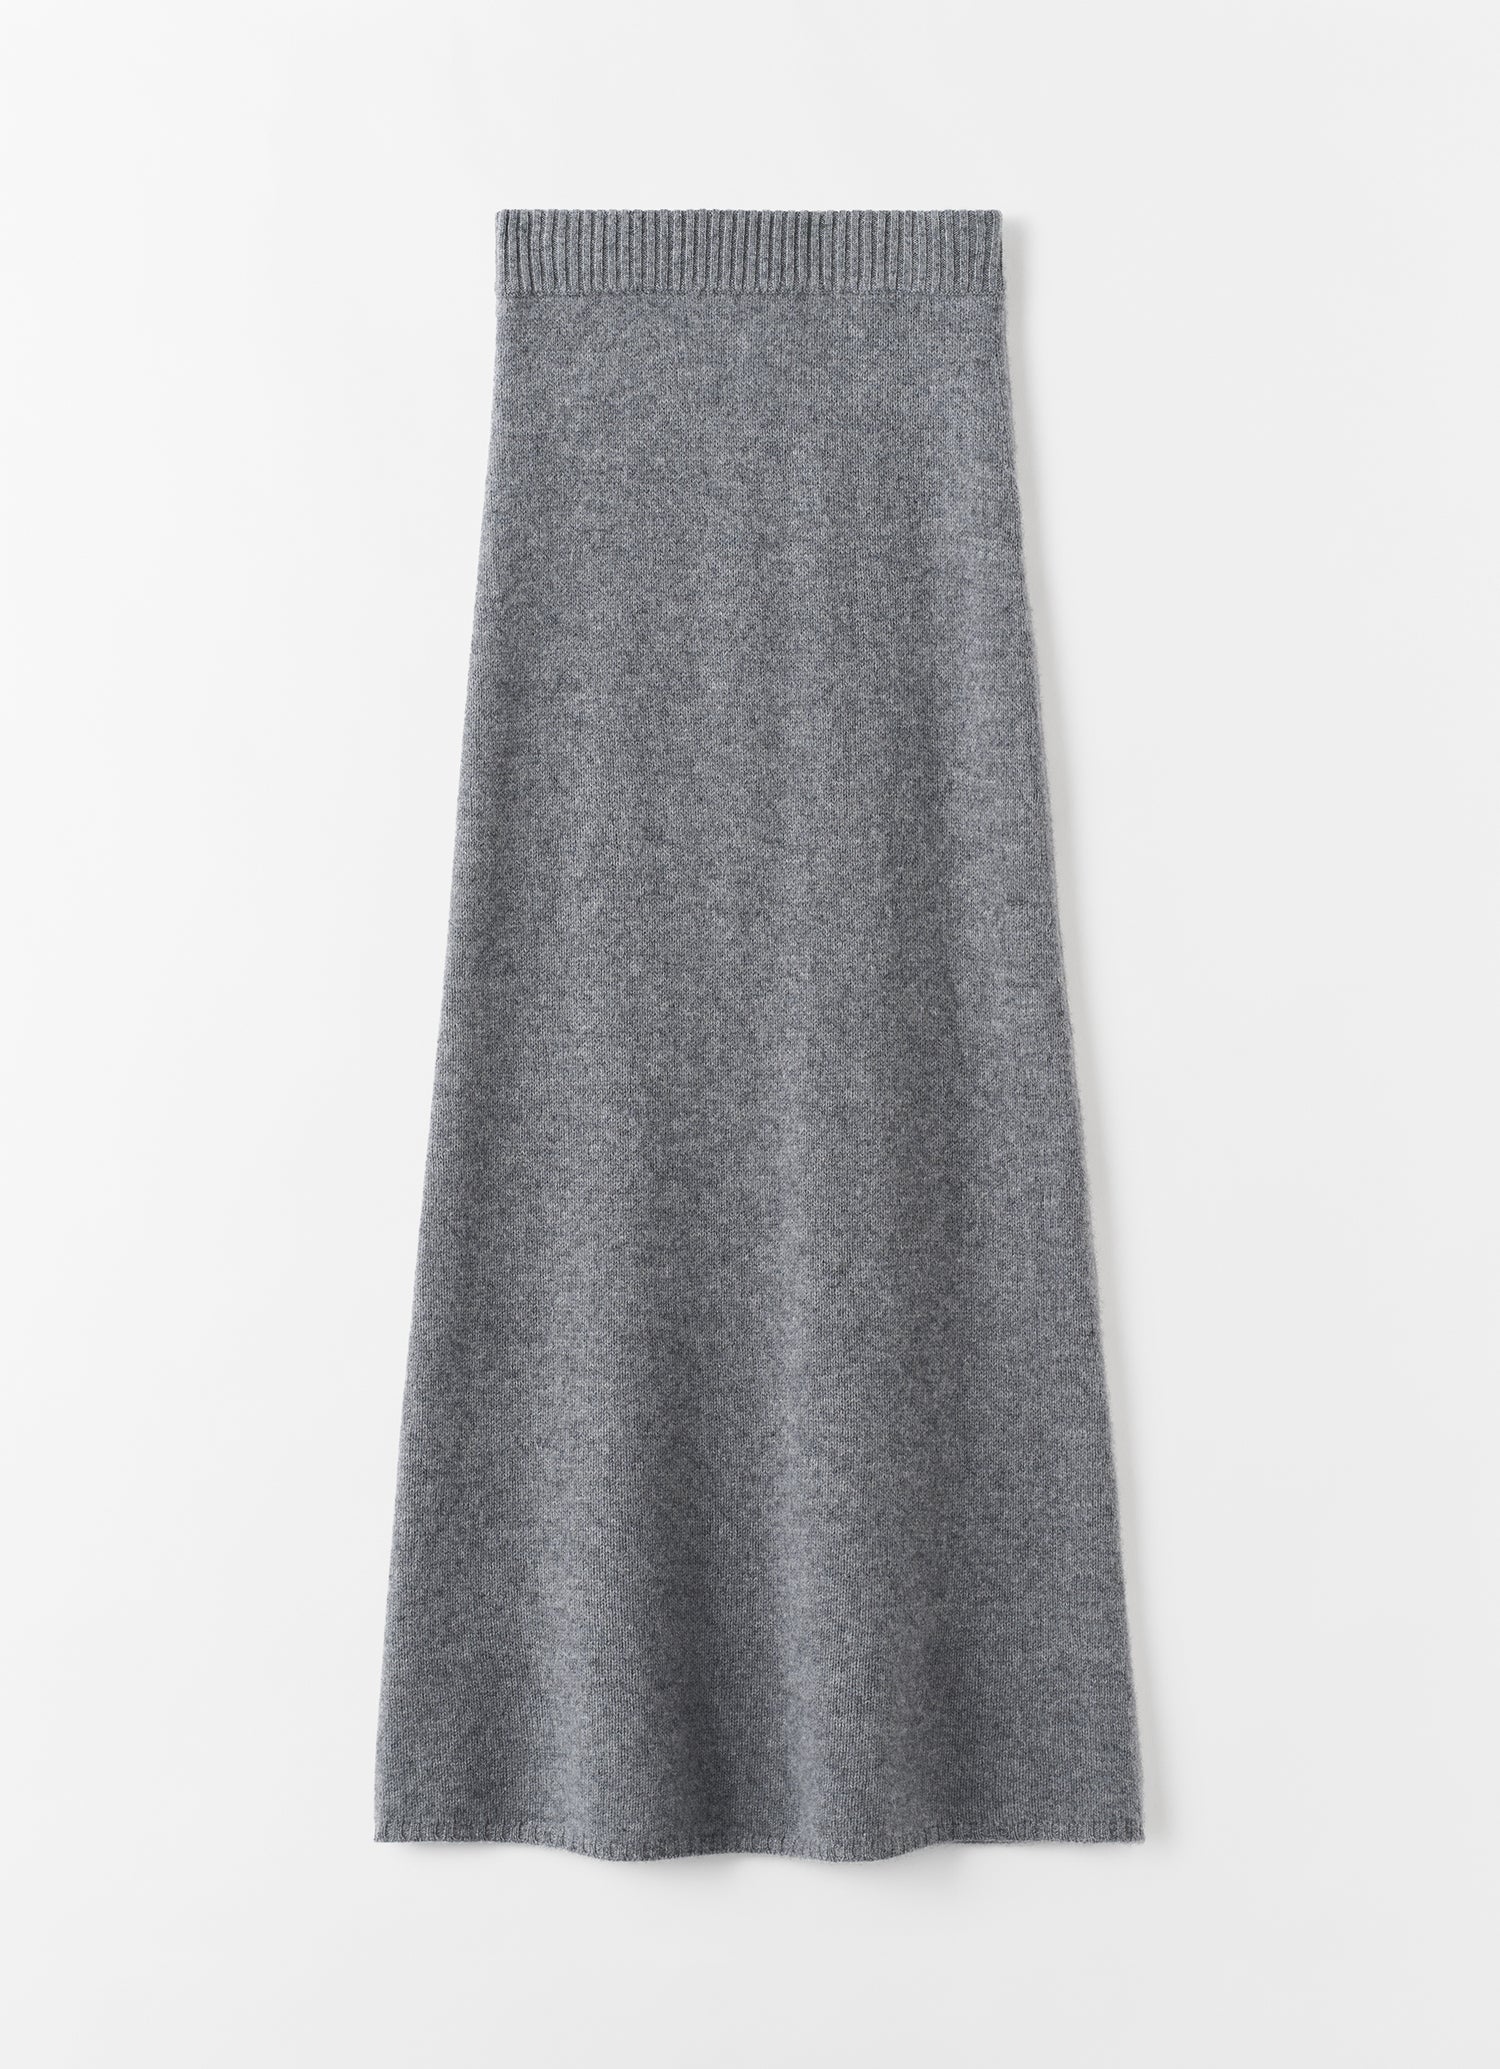 Umi Cashmere Skirt, grey